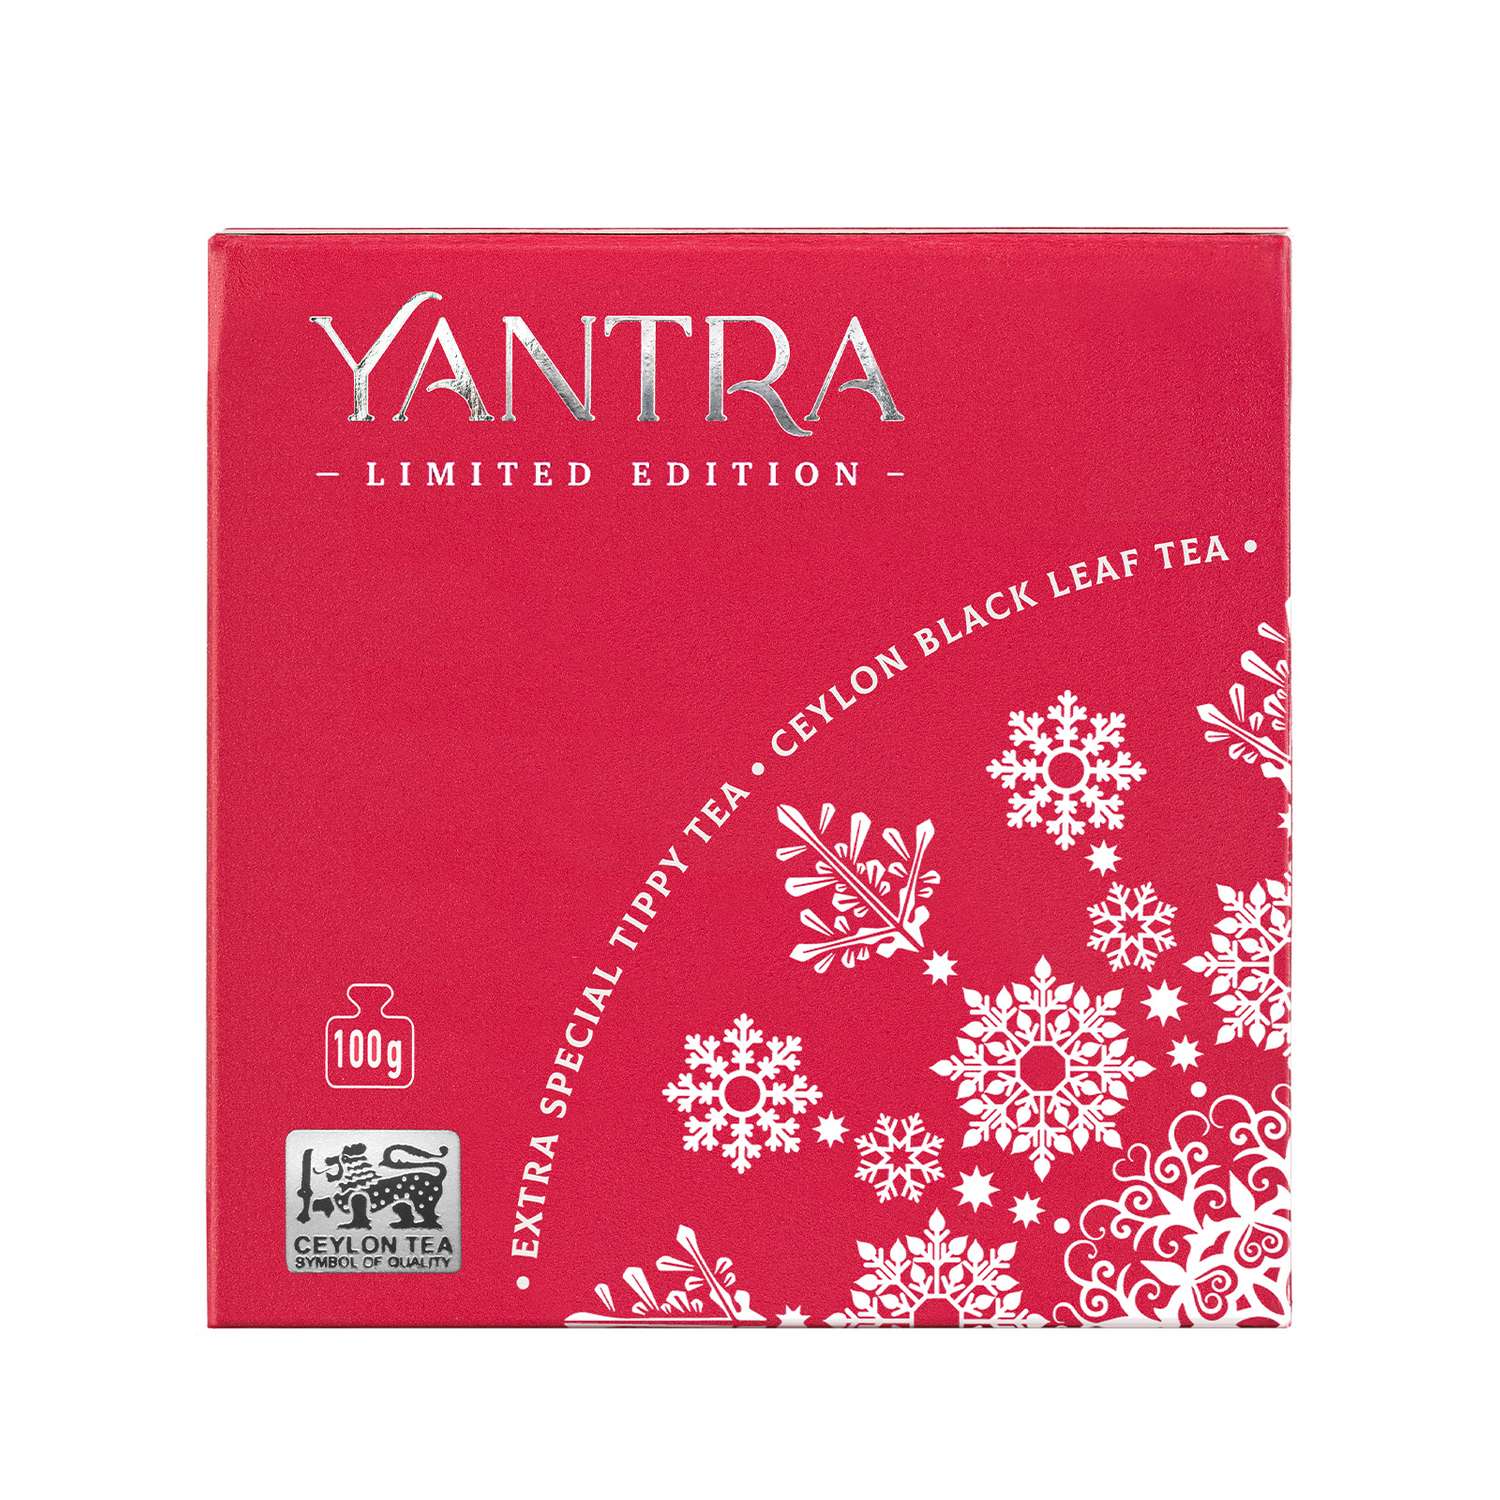 Чай Limited Edition Yantra чёрный лист с типсами стандарт Extra Special Tippy Tea 100 г - фото 5